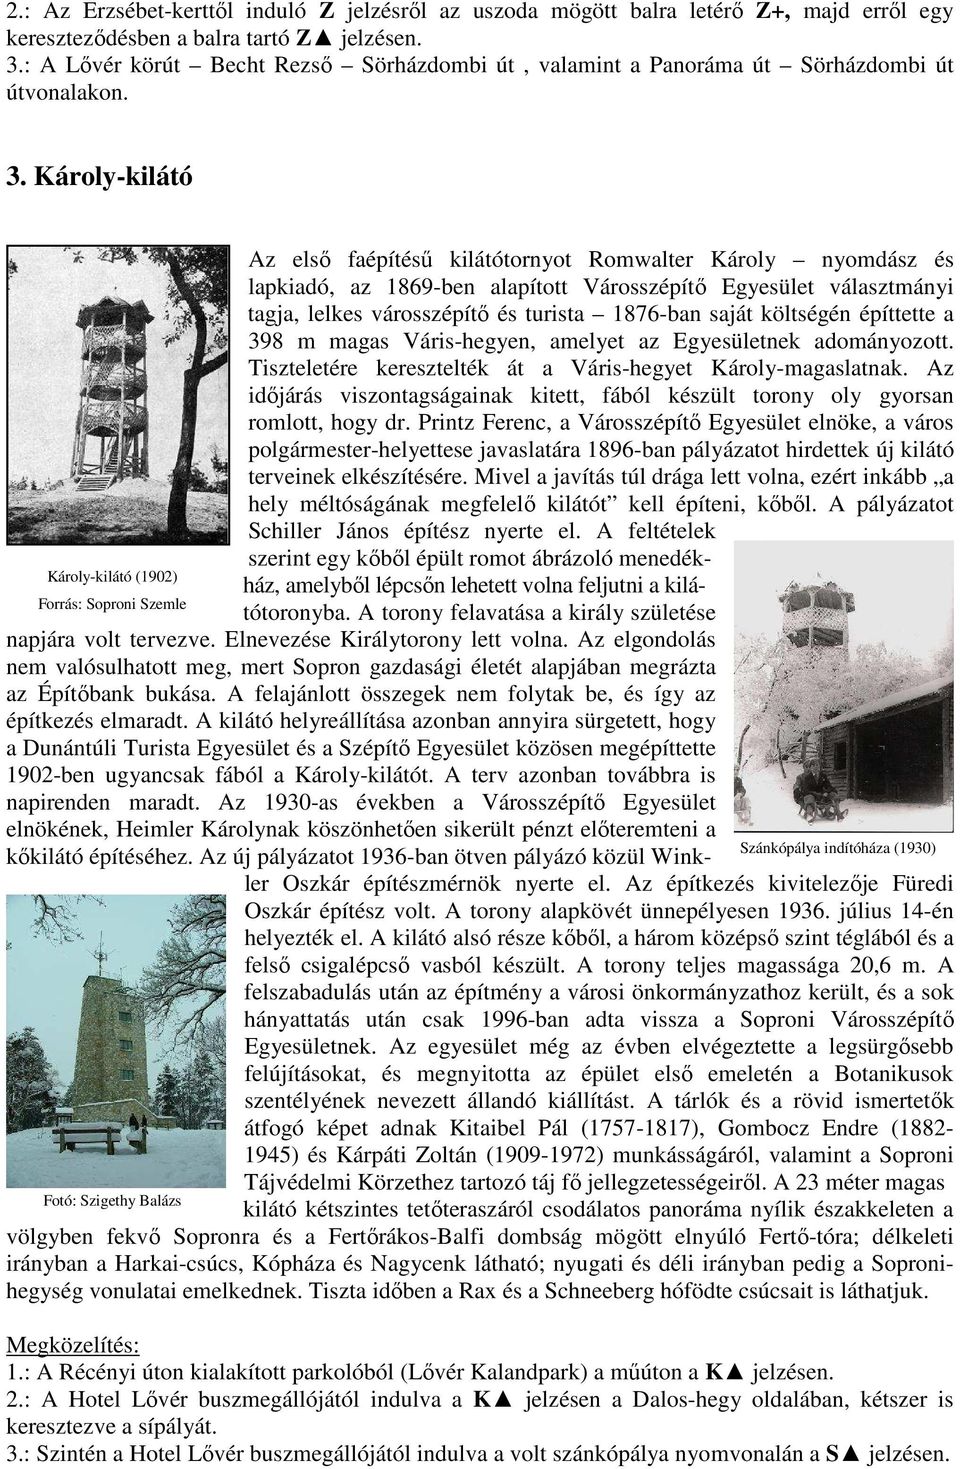 Károly-kilátó Az elsı faépítéső kilátótornyot Romwalter Károly nyomdász és lapkiadó, az 1869-ben alapított Városszépítı Egyesület választmányi tagja, lelkes városszépítı és turista 1876-ban saját